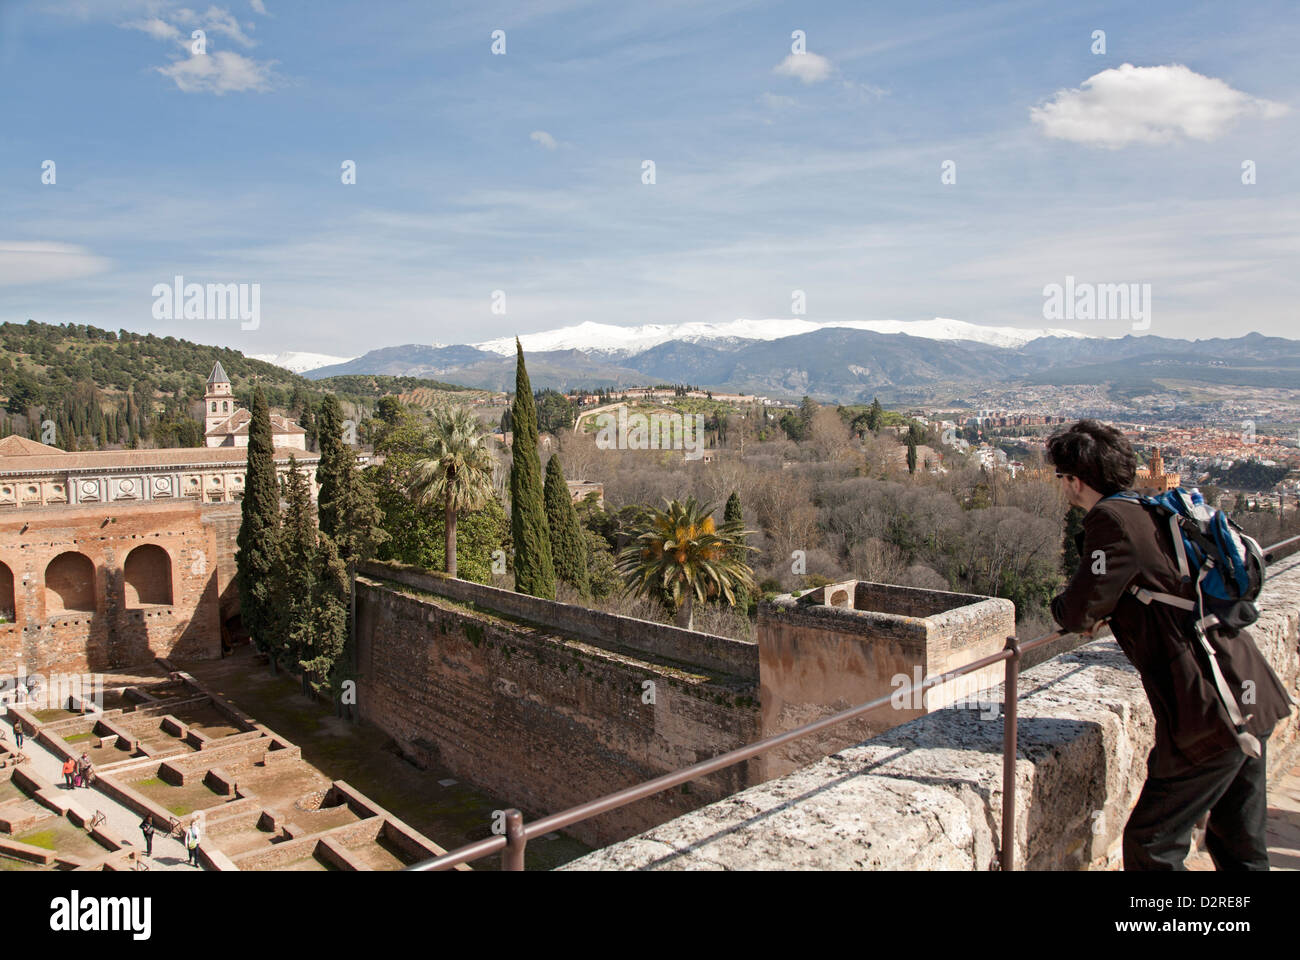 Un visitatore ammira la vista dalla Torre de la Vela del vecchio Alcazaba nell'Alhambra e il circostante paesaggio spagnolo. Foto Stock